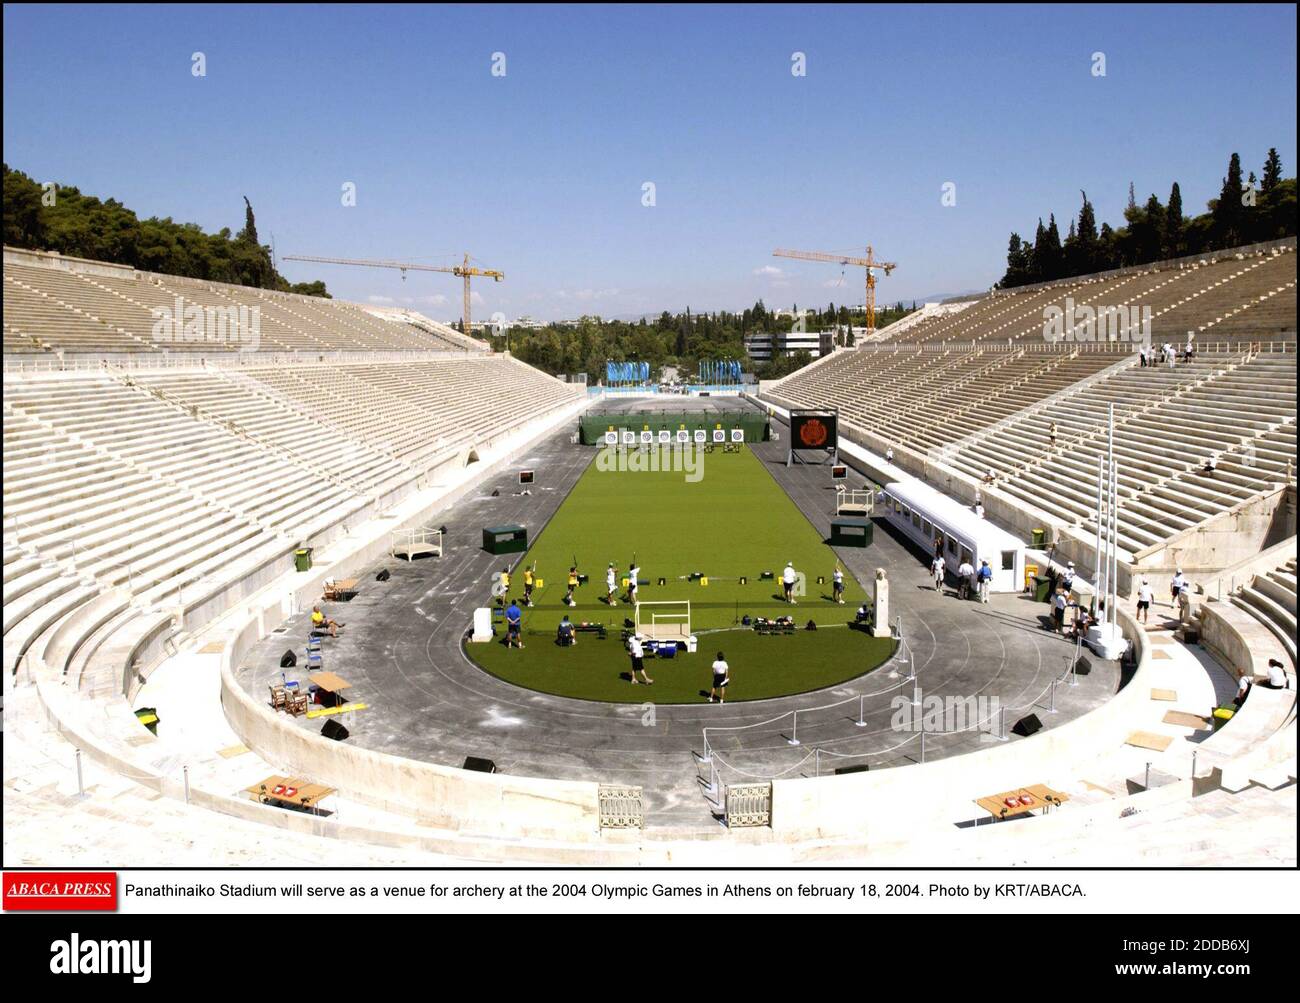 NESSUN FILM, NESSUN VIDEO, NESSUNA TV, NESSUN DOCUMENTARIO - lo Stadio Panathinaiko servirà come luogo di tiro con l'arco ai Giochi Olimpici 2004 di Atene il 18 febbraio 2004. Foto di KRT/ABACA. Foto Stock